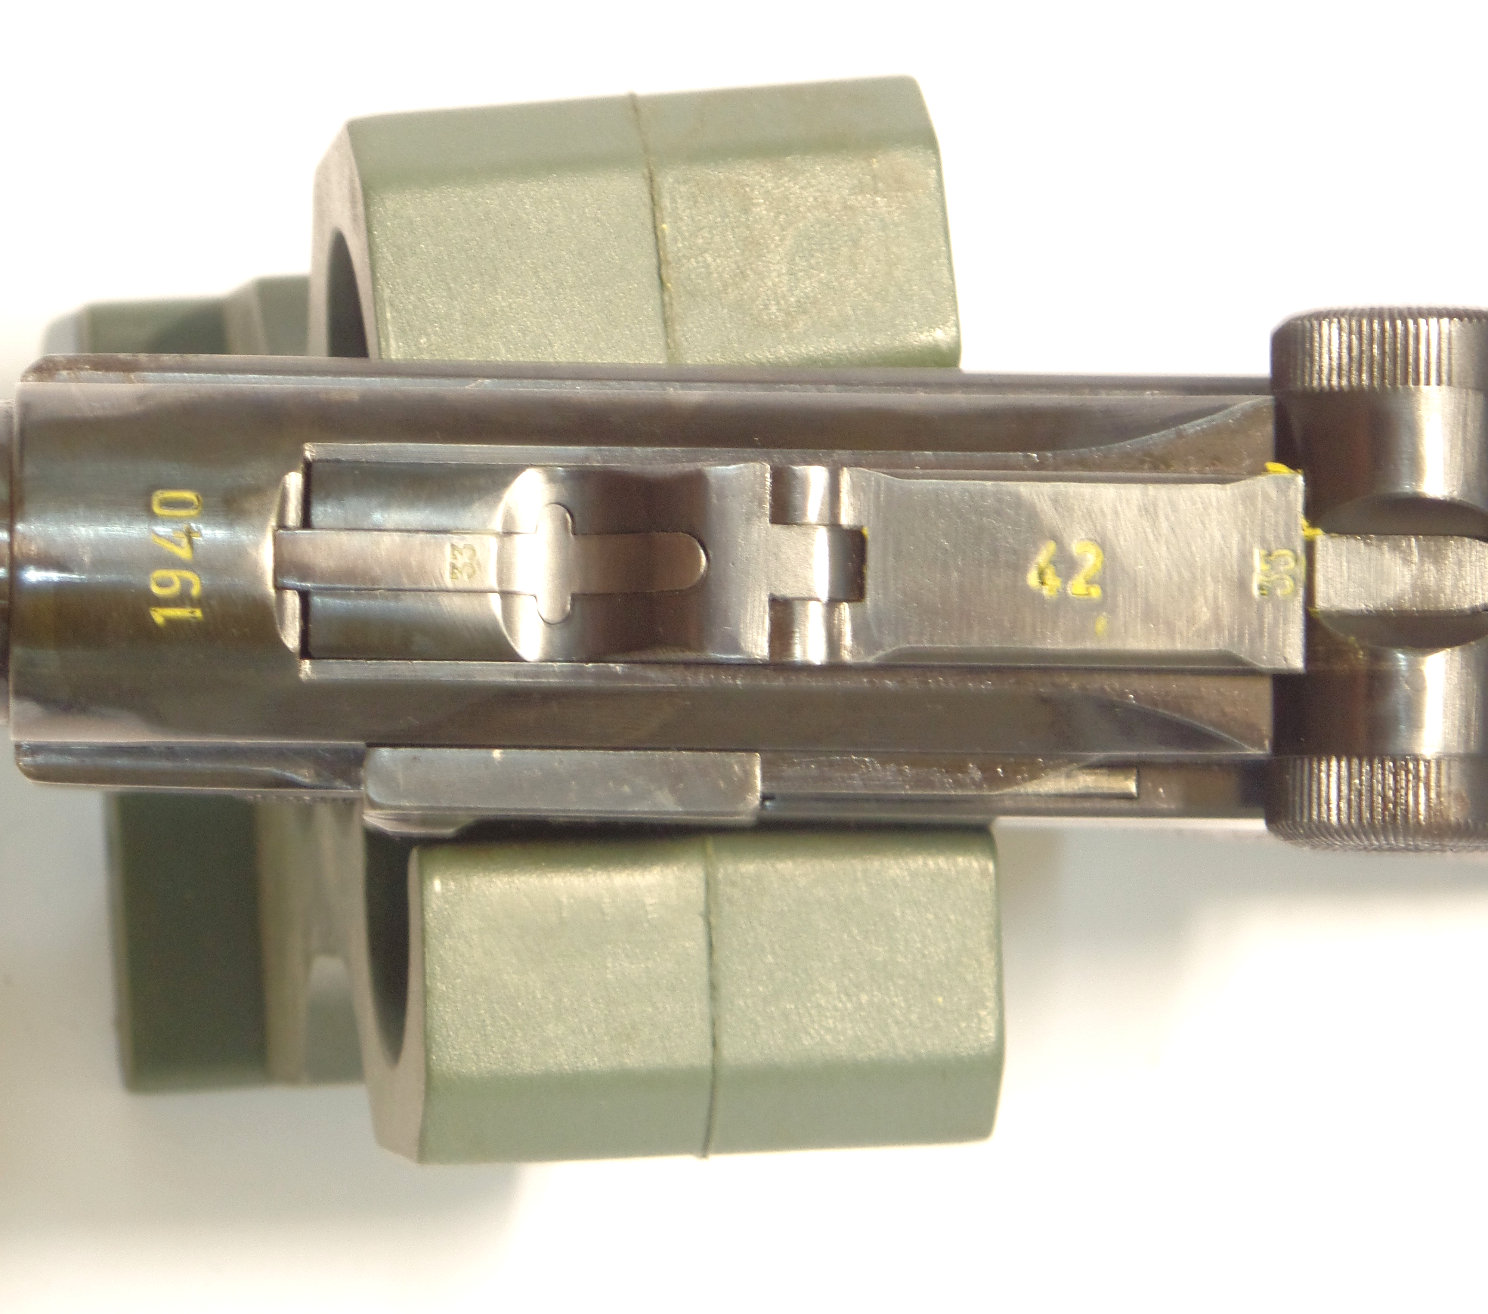 LUGER P08 byf40 calibre 9Para